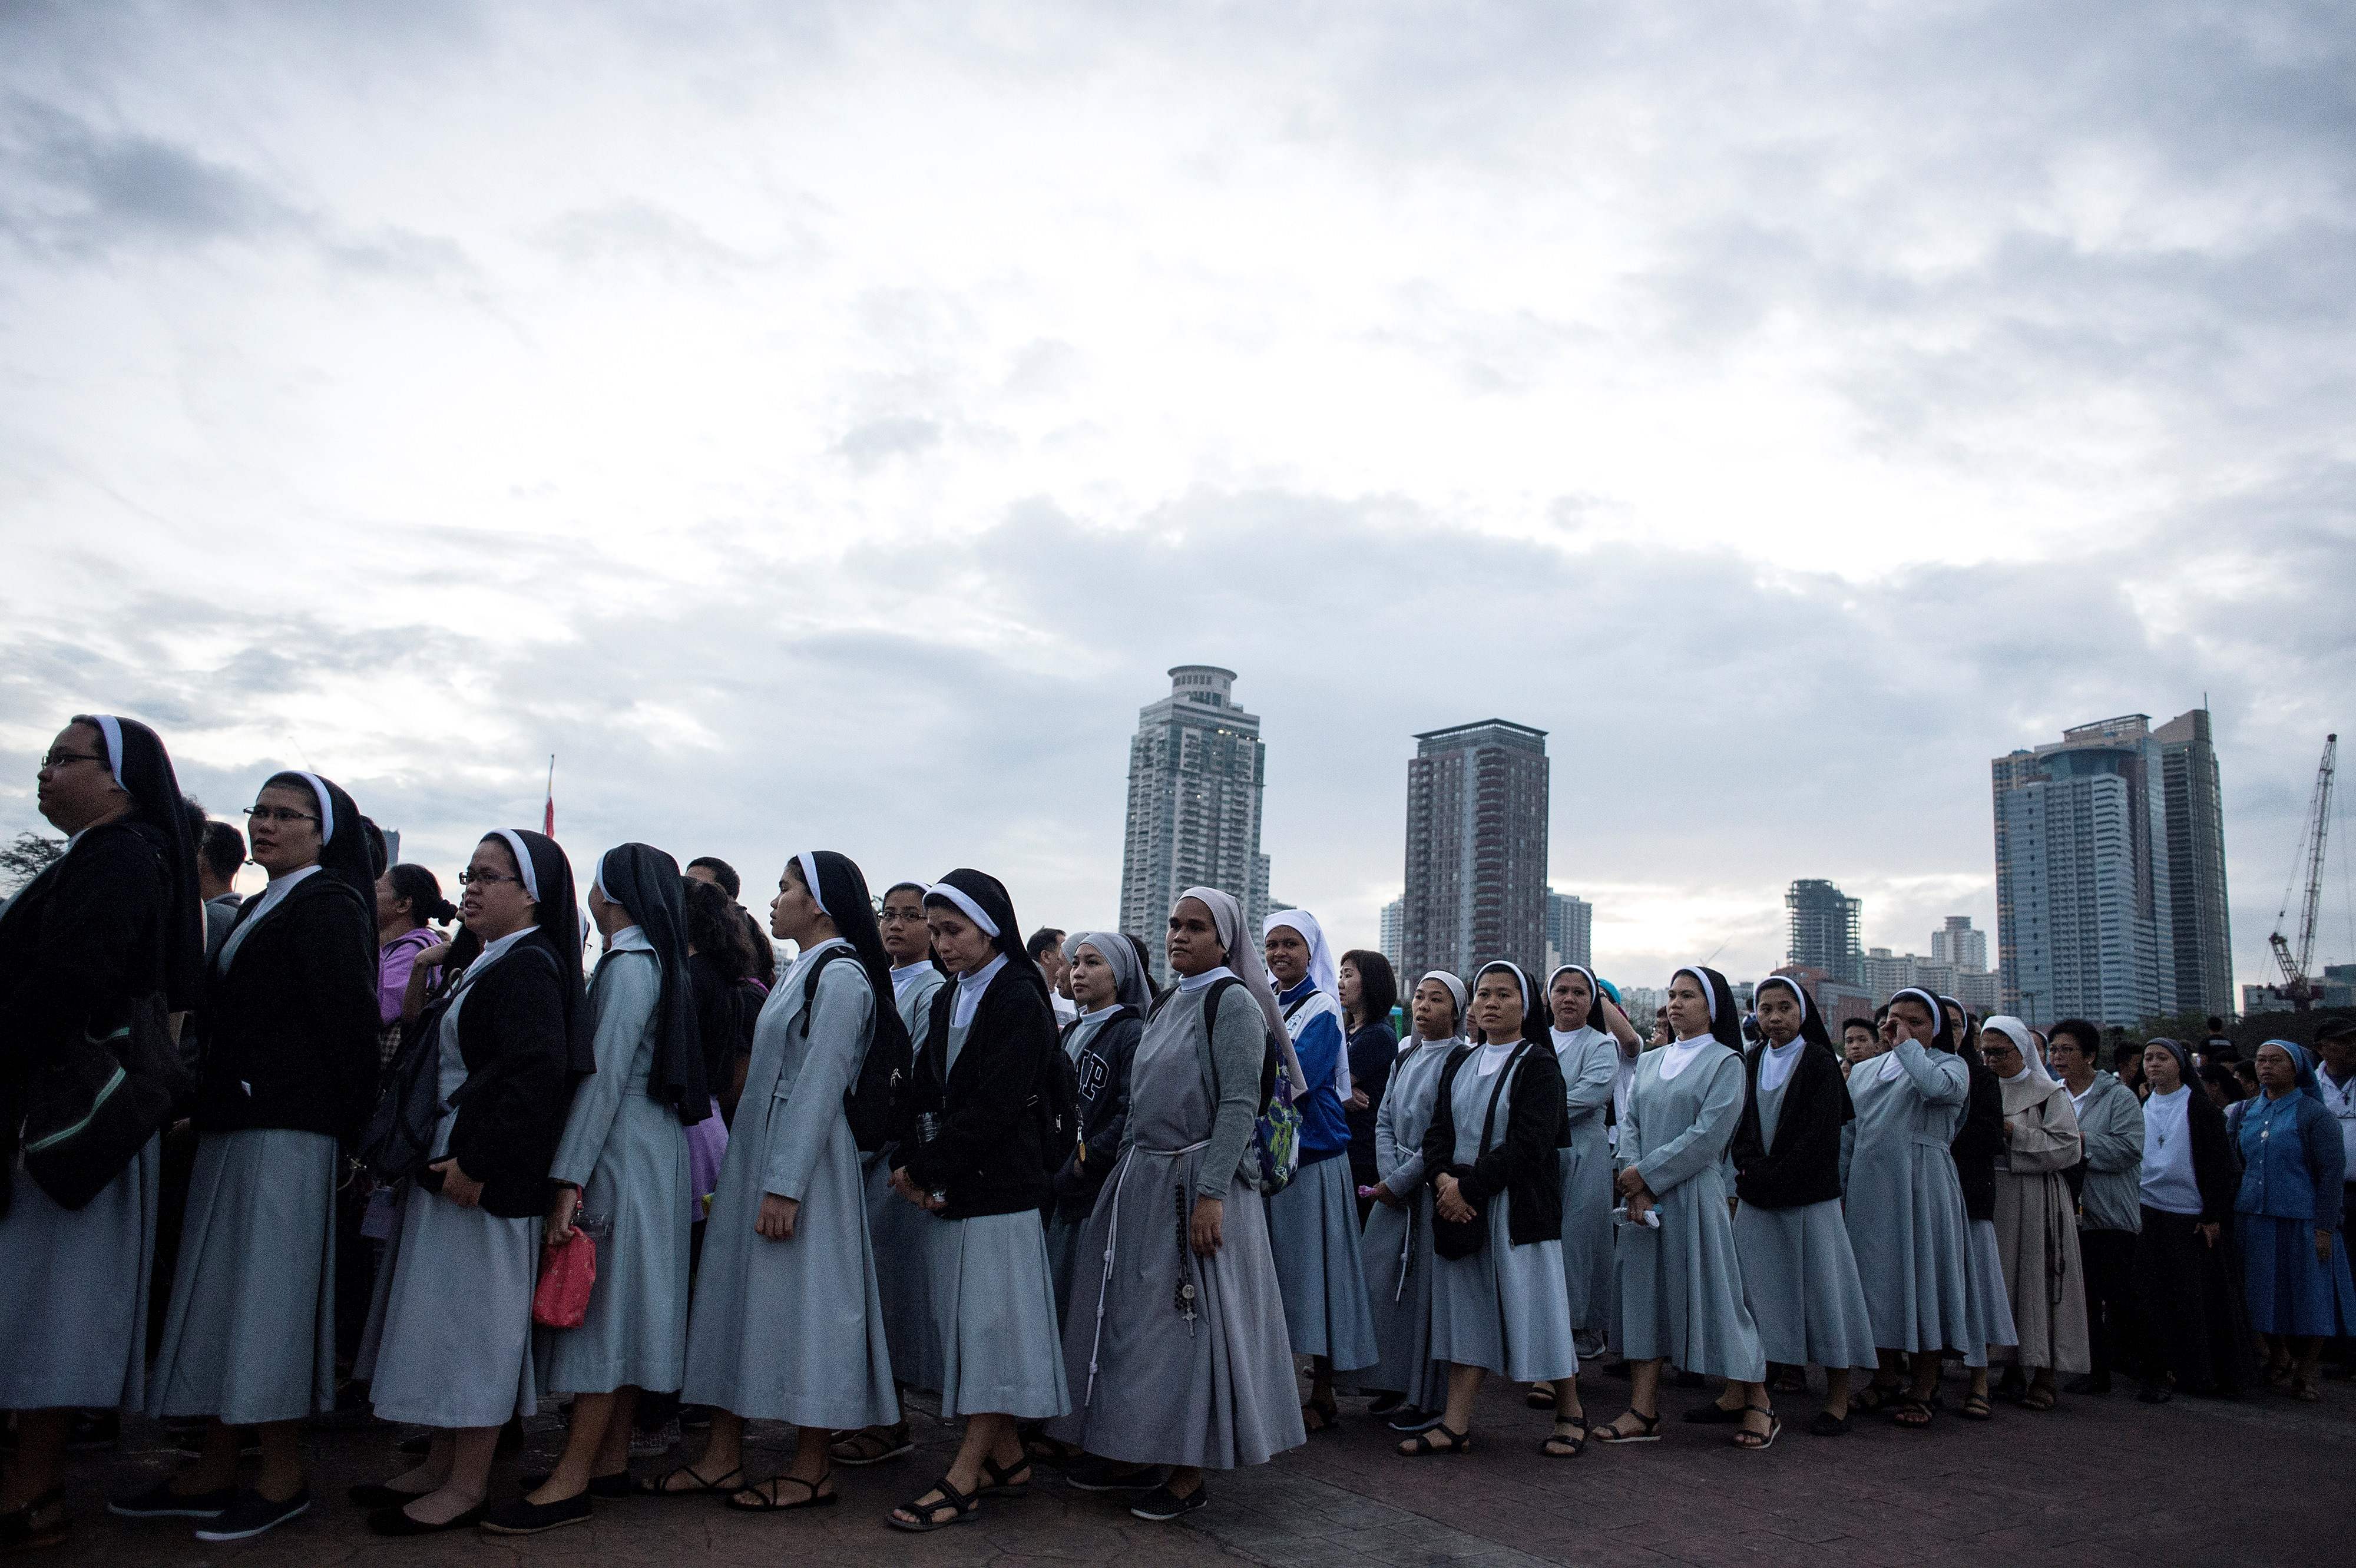 آلاف من الكاثوليك مسيرة فى العاصمة الفلبينية مانيلا